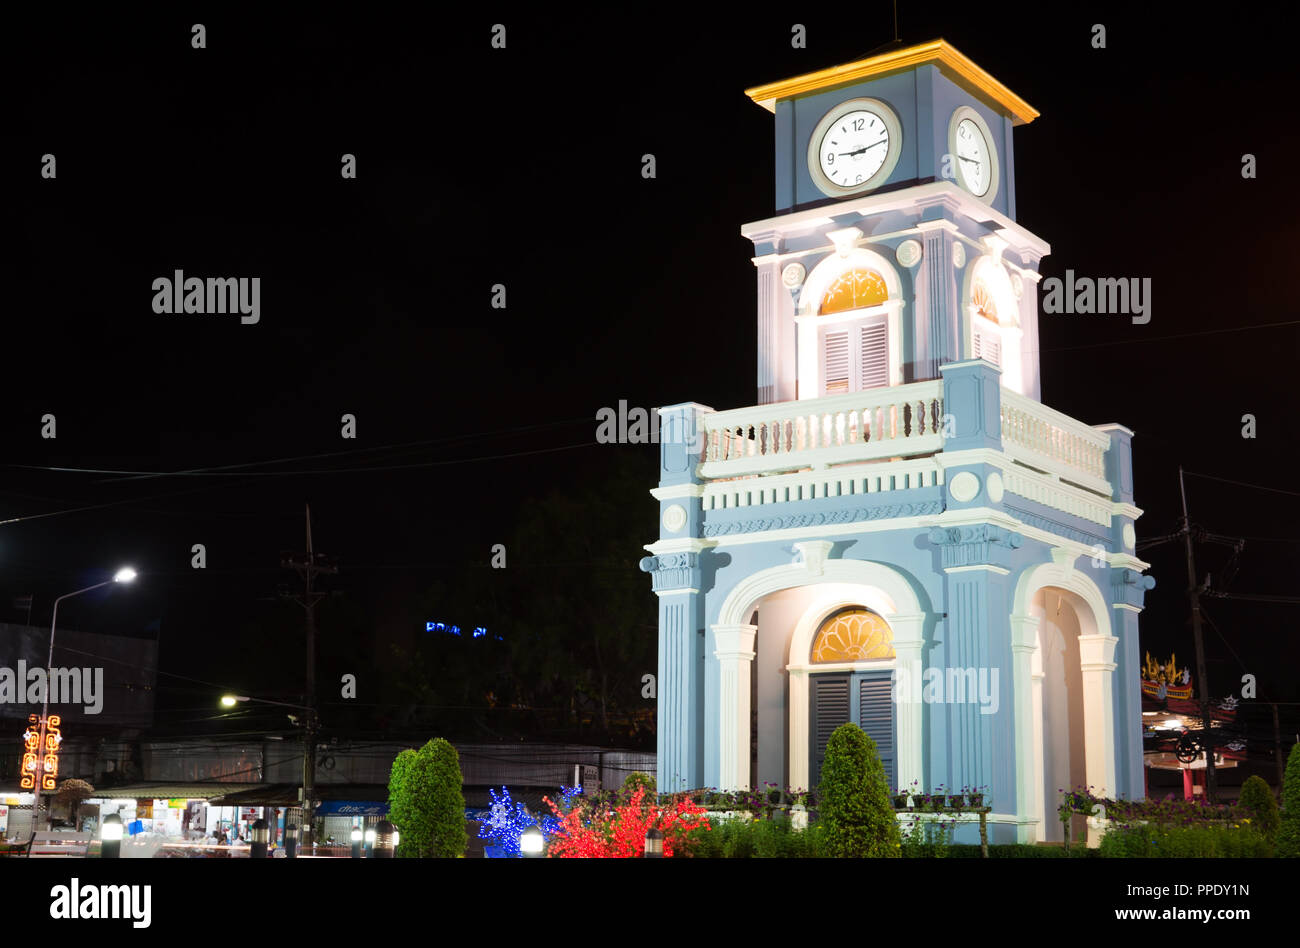 Círculo de Surin estaba situado en el centro de la ciudad de Phuket, es una rotonda de la carretera principal de la ciudad de Phuket, con una torre del reloj en el centro histórico Foto de stock